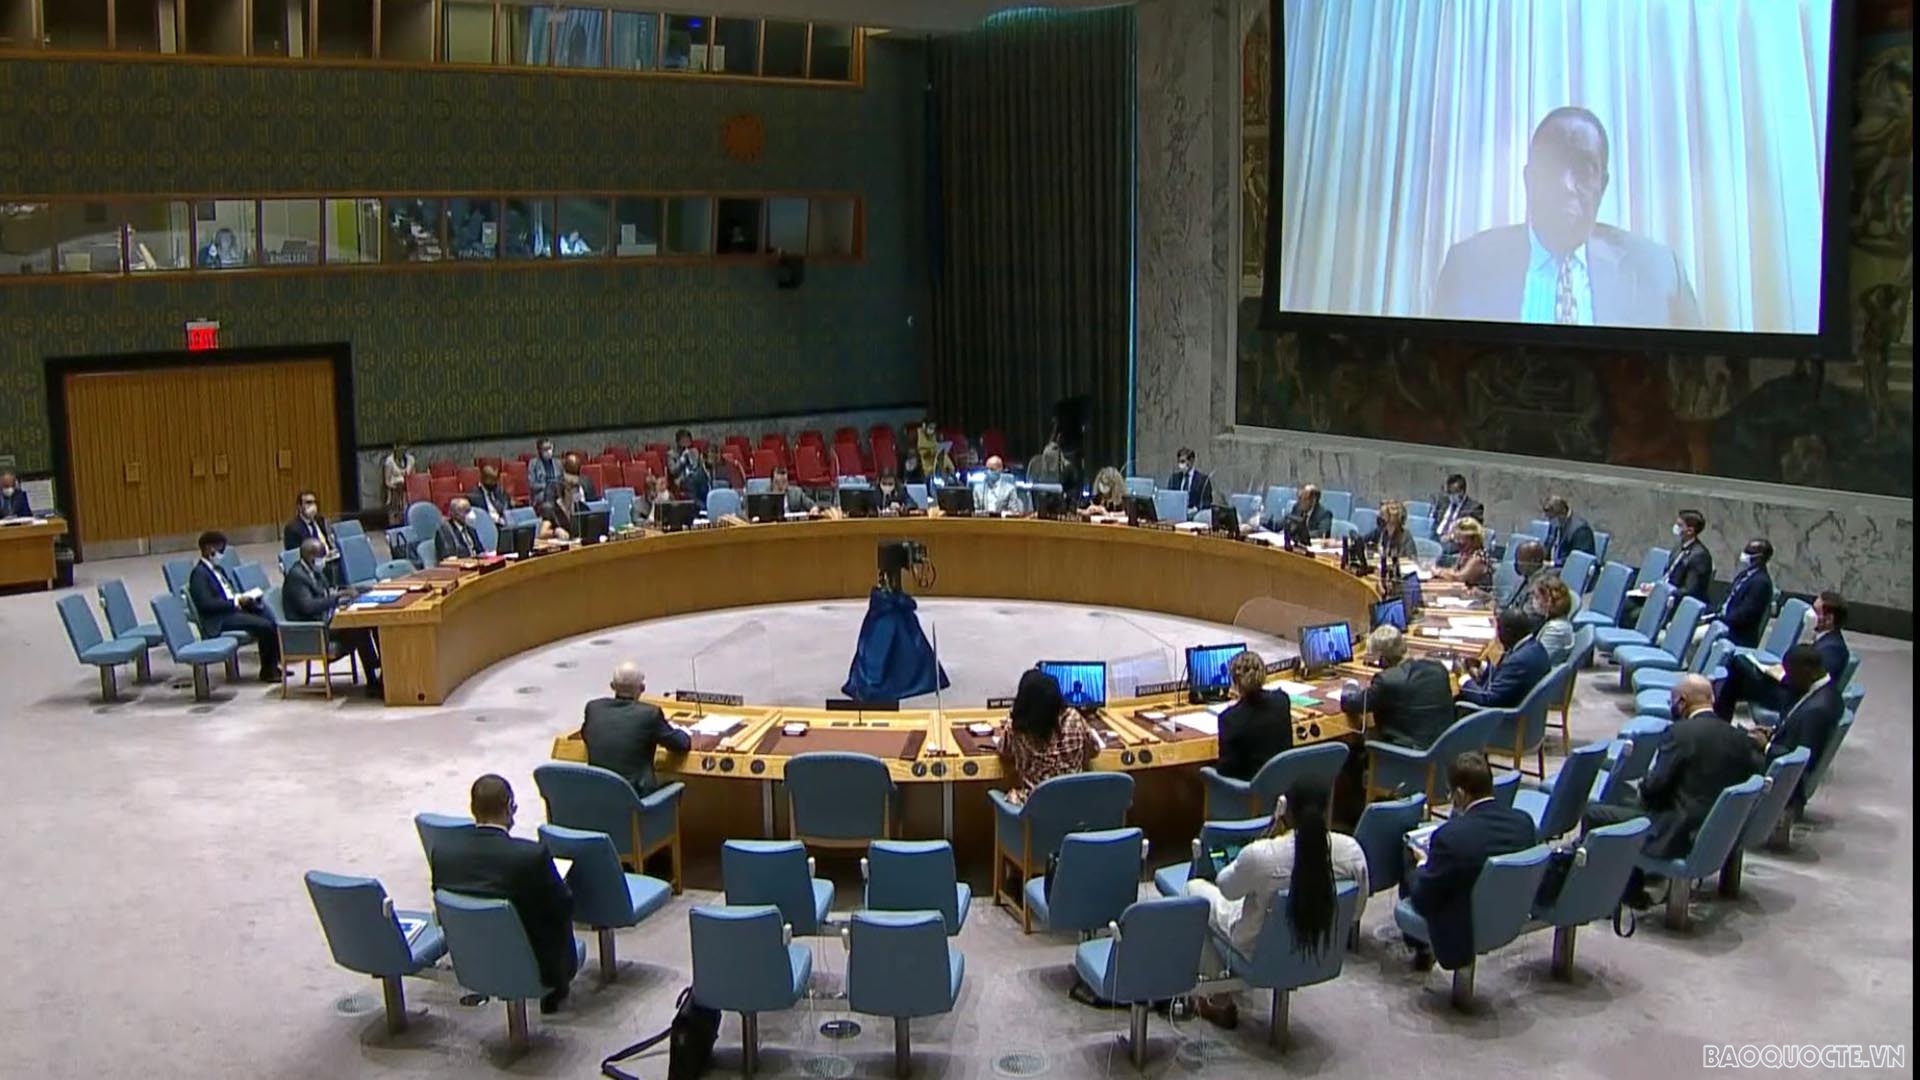 Hội đồng Bảo an Liên hợp quốc họp nghe báo cáo về tình hình Somalia và hoạt động của UNSOM